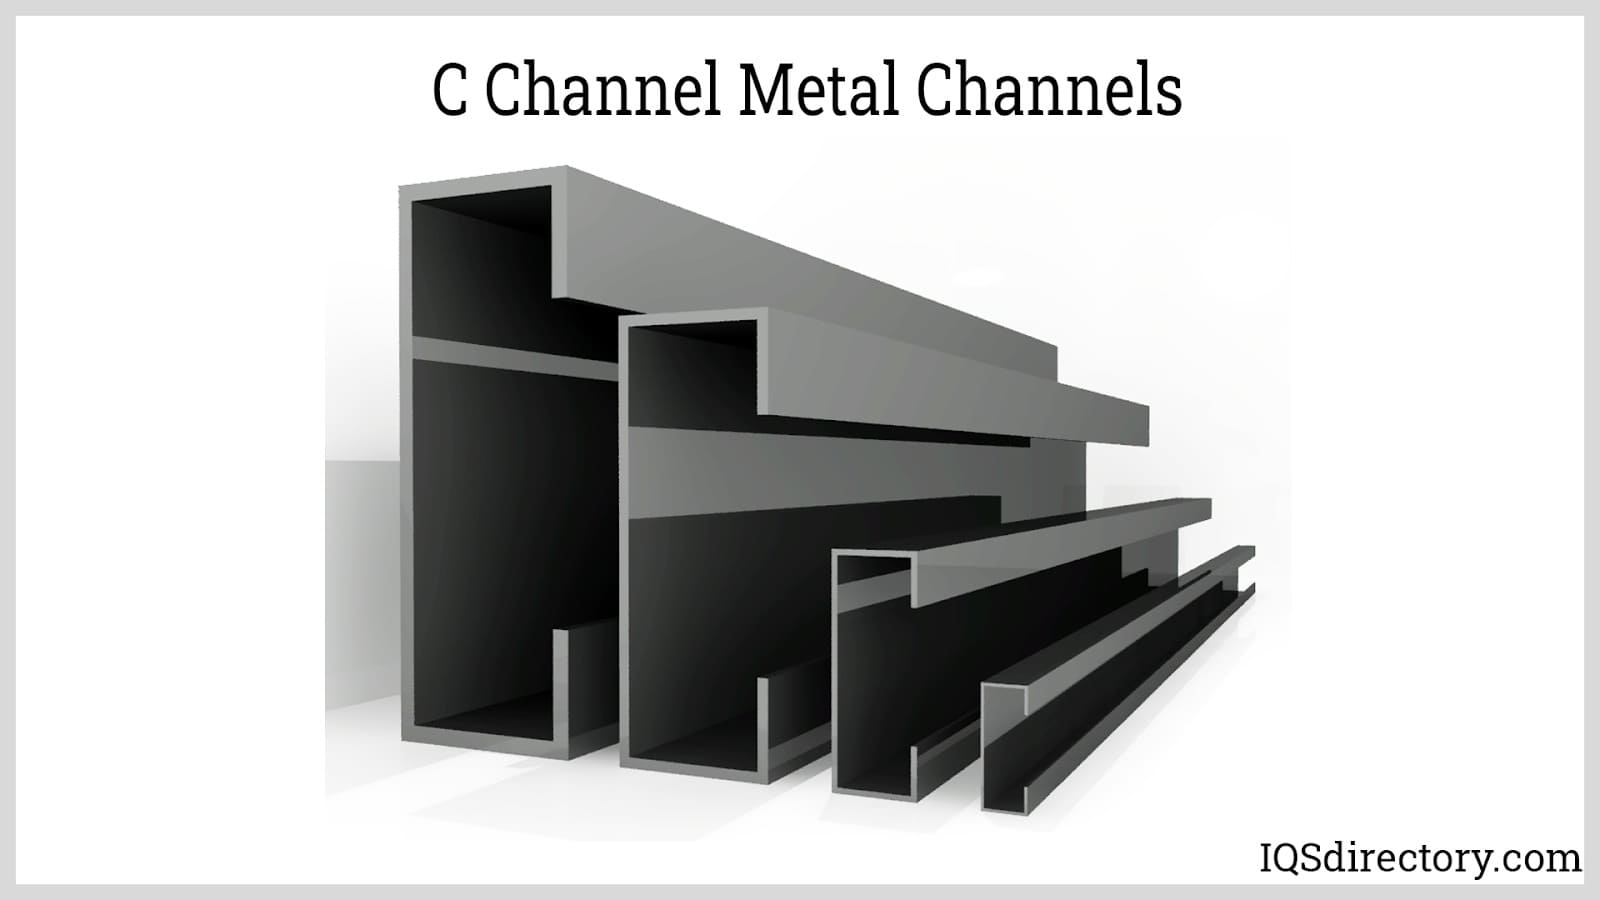 C channels